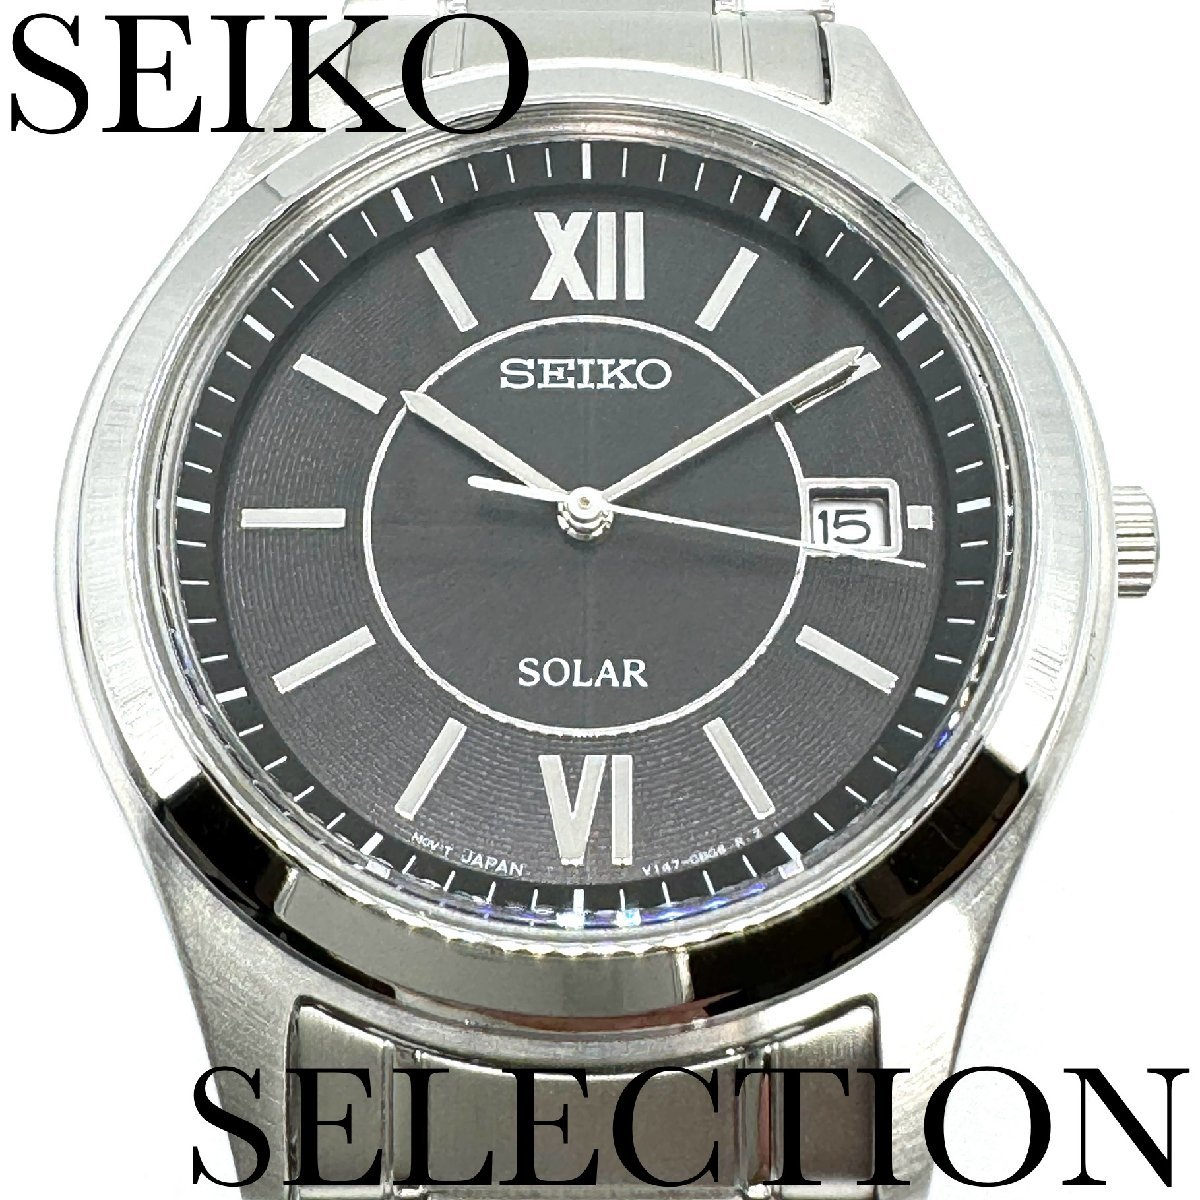 新品正規品『SEIKO SELECTION』セイコー セレクション ソーラー腕時計 メンズ SBPN061【送料無料】